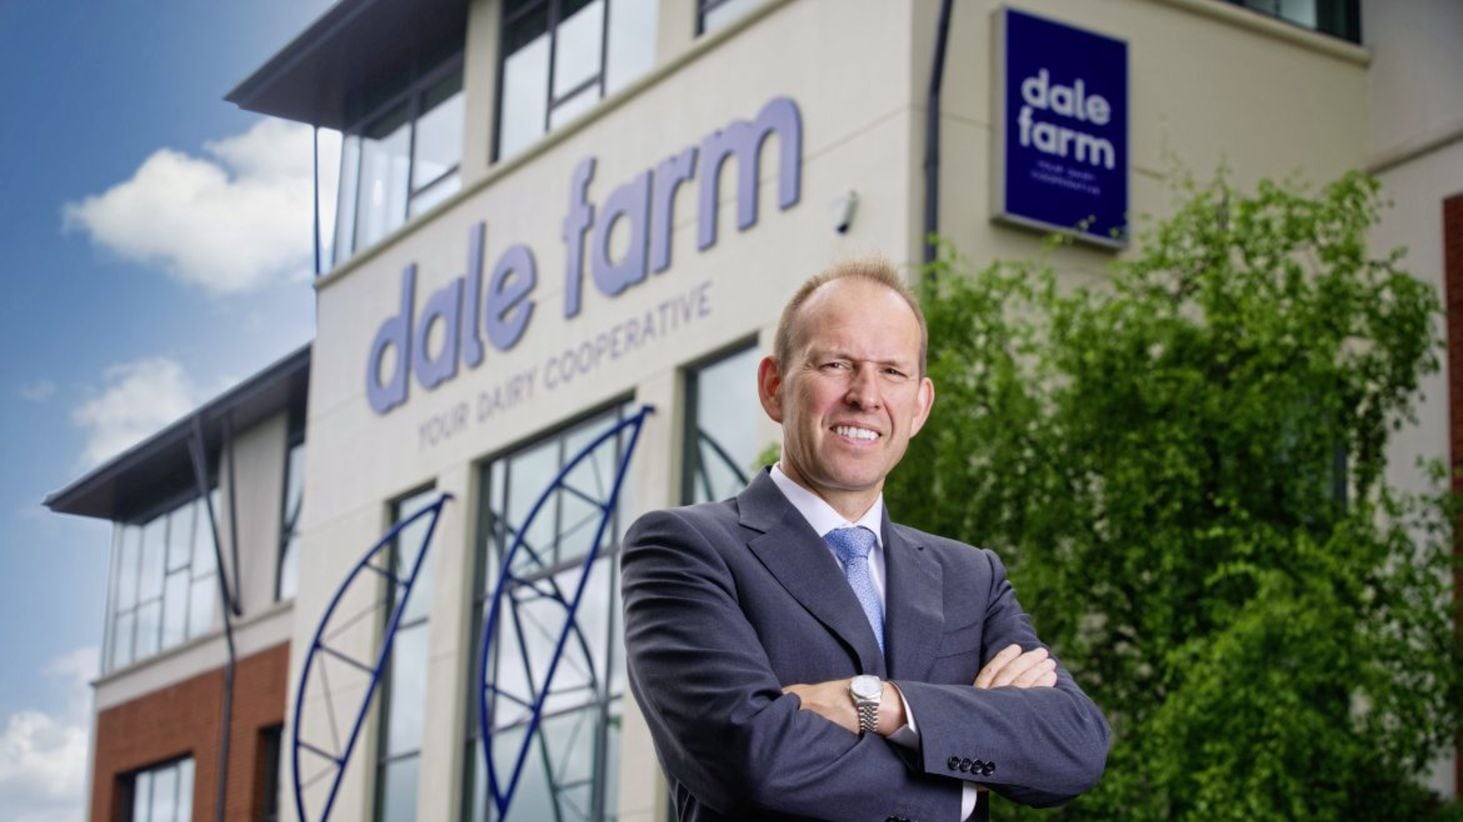 Nick Whelan, group chief executive at Dale Farm 